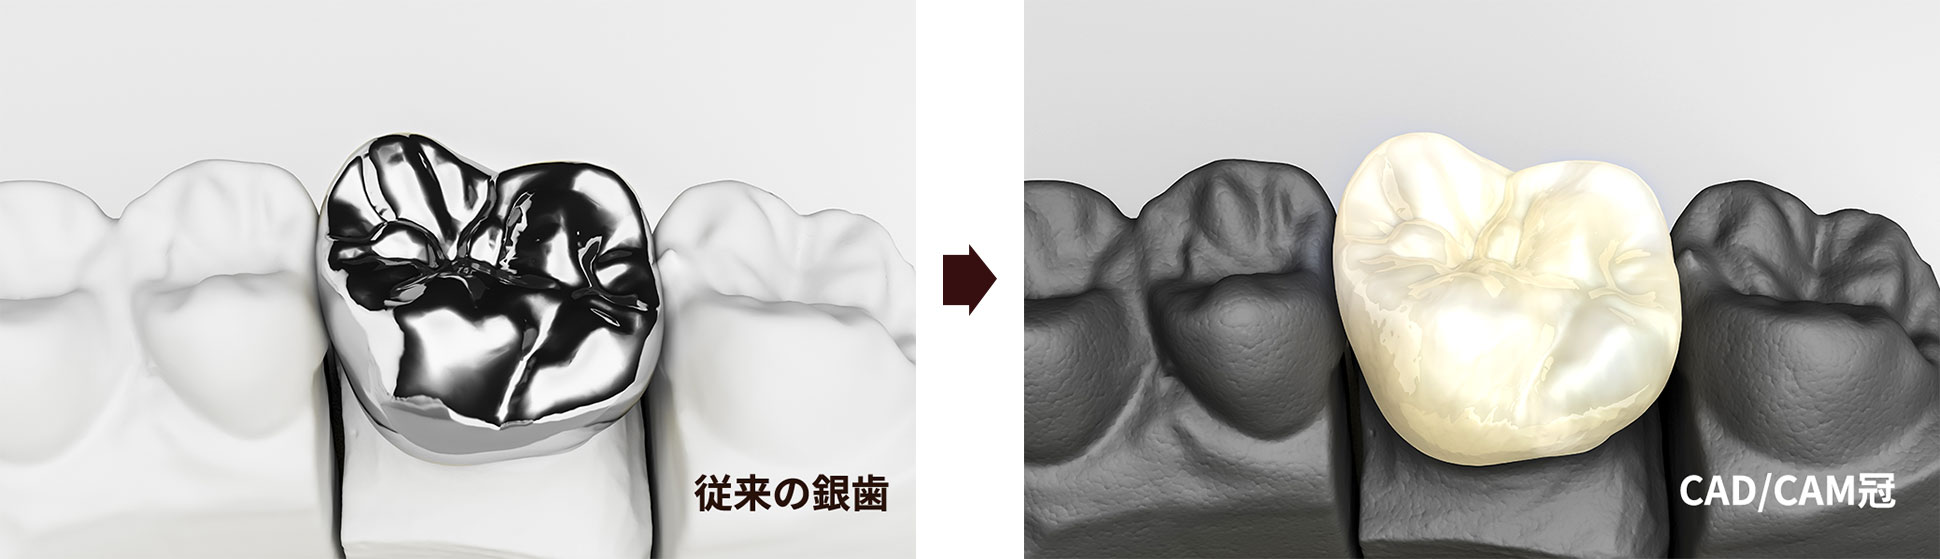 保険適用で歯の白い被せ物（CAD/CAM冠）ができるのをご存じですか？